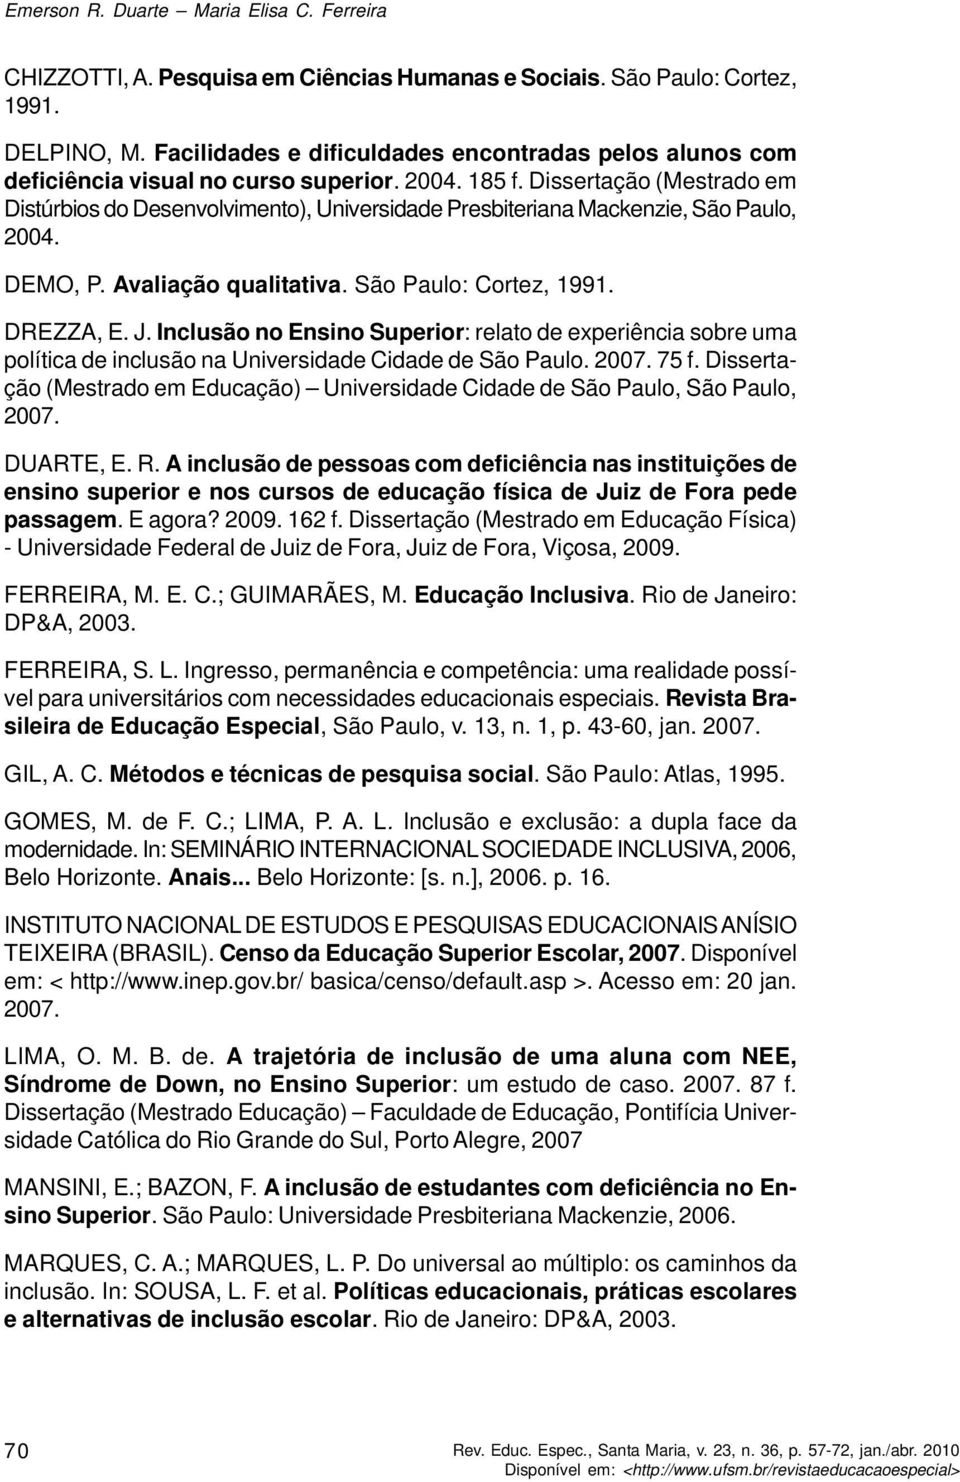 Dissertação (Mestrado em Distúrbios do Desenvolvimento), Universidade Presbiteriana Mackenzie, São Paulo, 2004. DEMO, P. Avaliação qualitativa. São Paulo: Cortez, 1991. DREZZA, E. J.